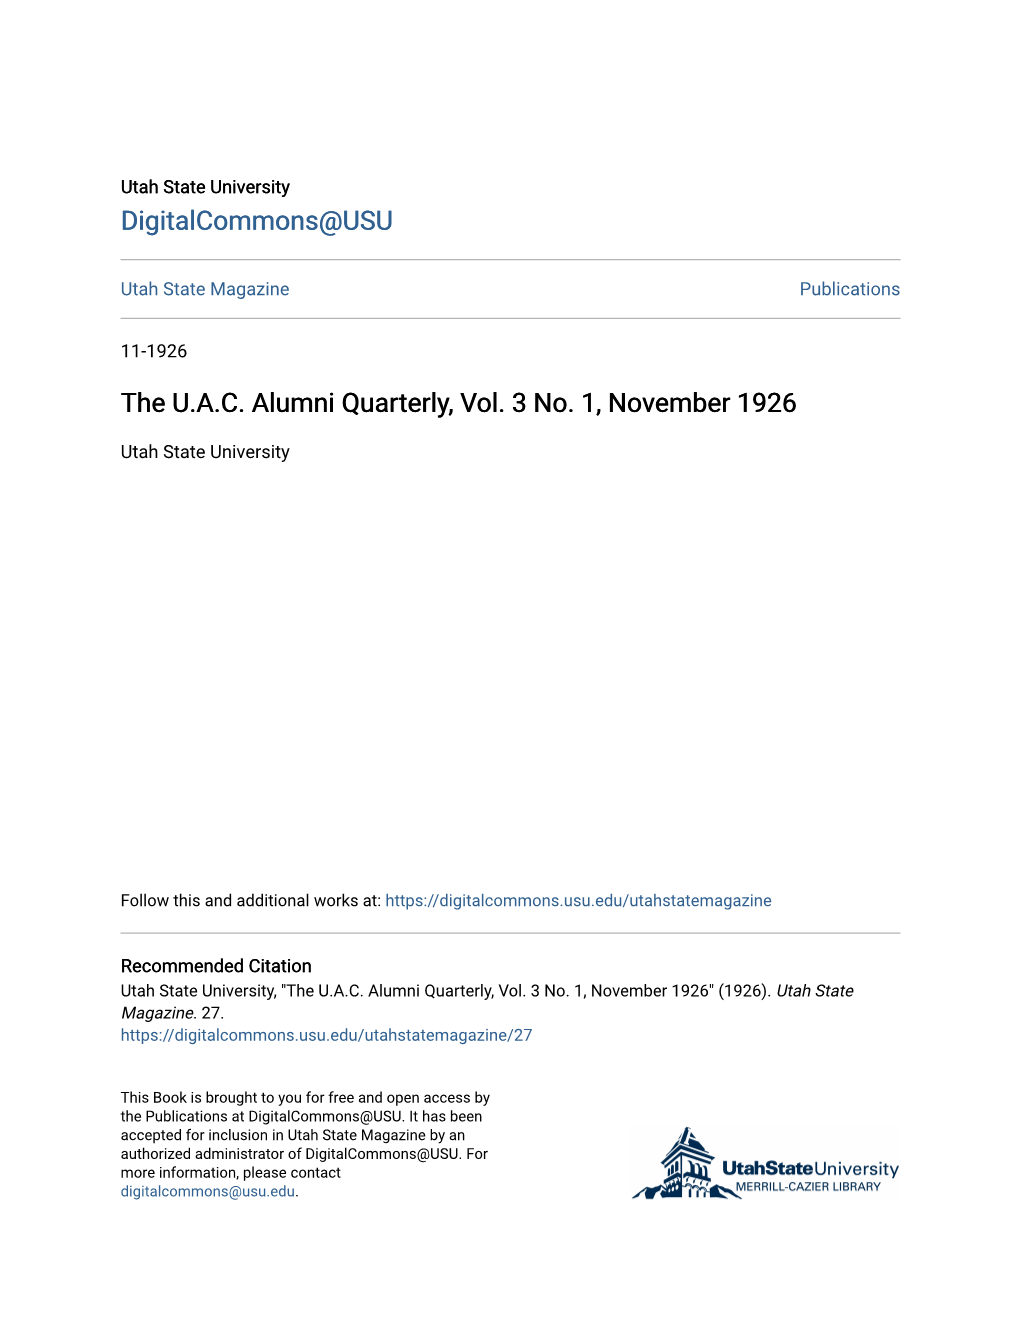 The U.A.C. Alumni Quarterly, Vol. 3 No. 1, November 1926